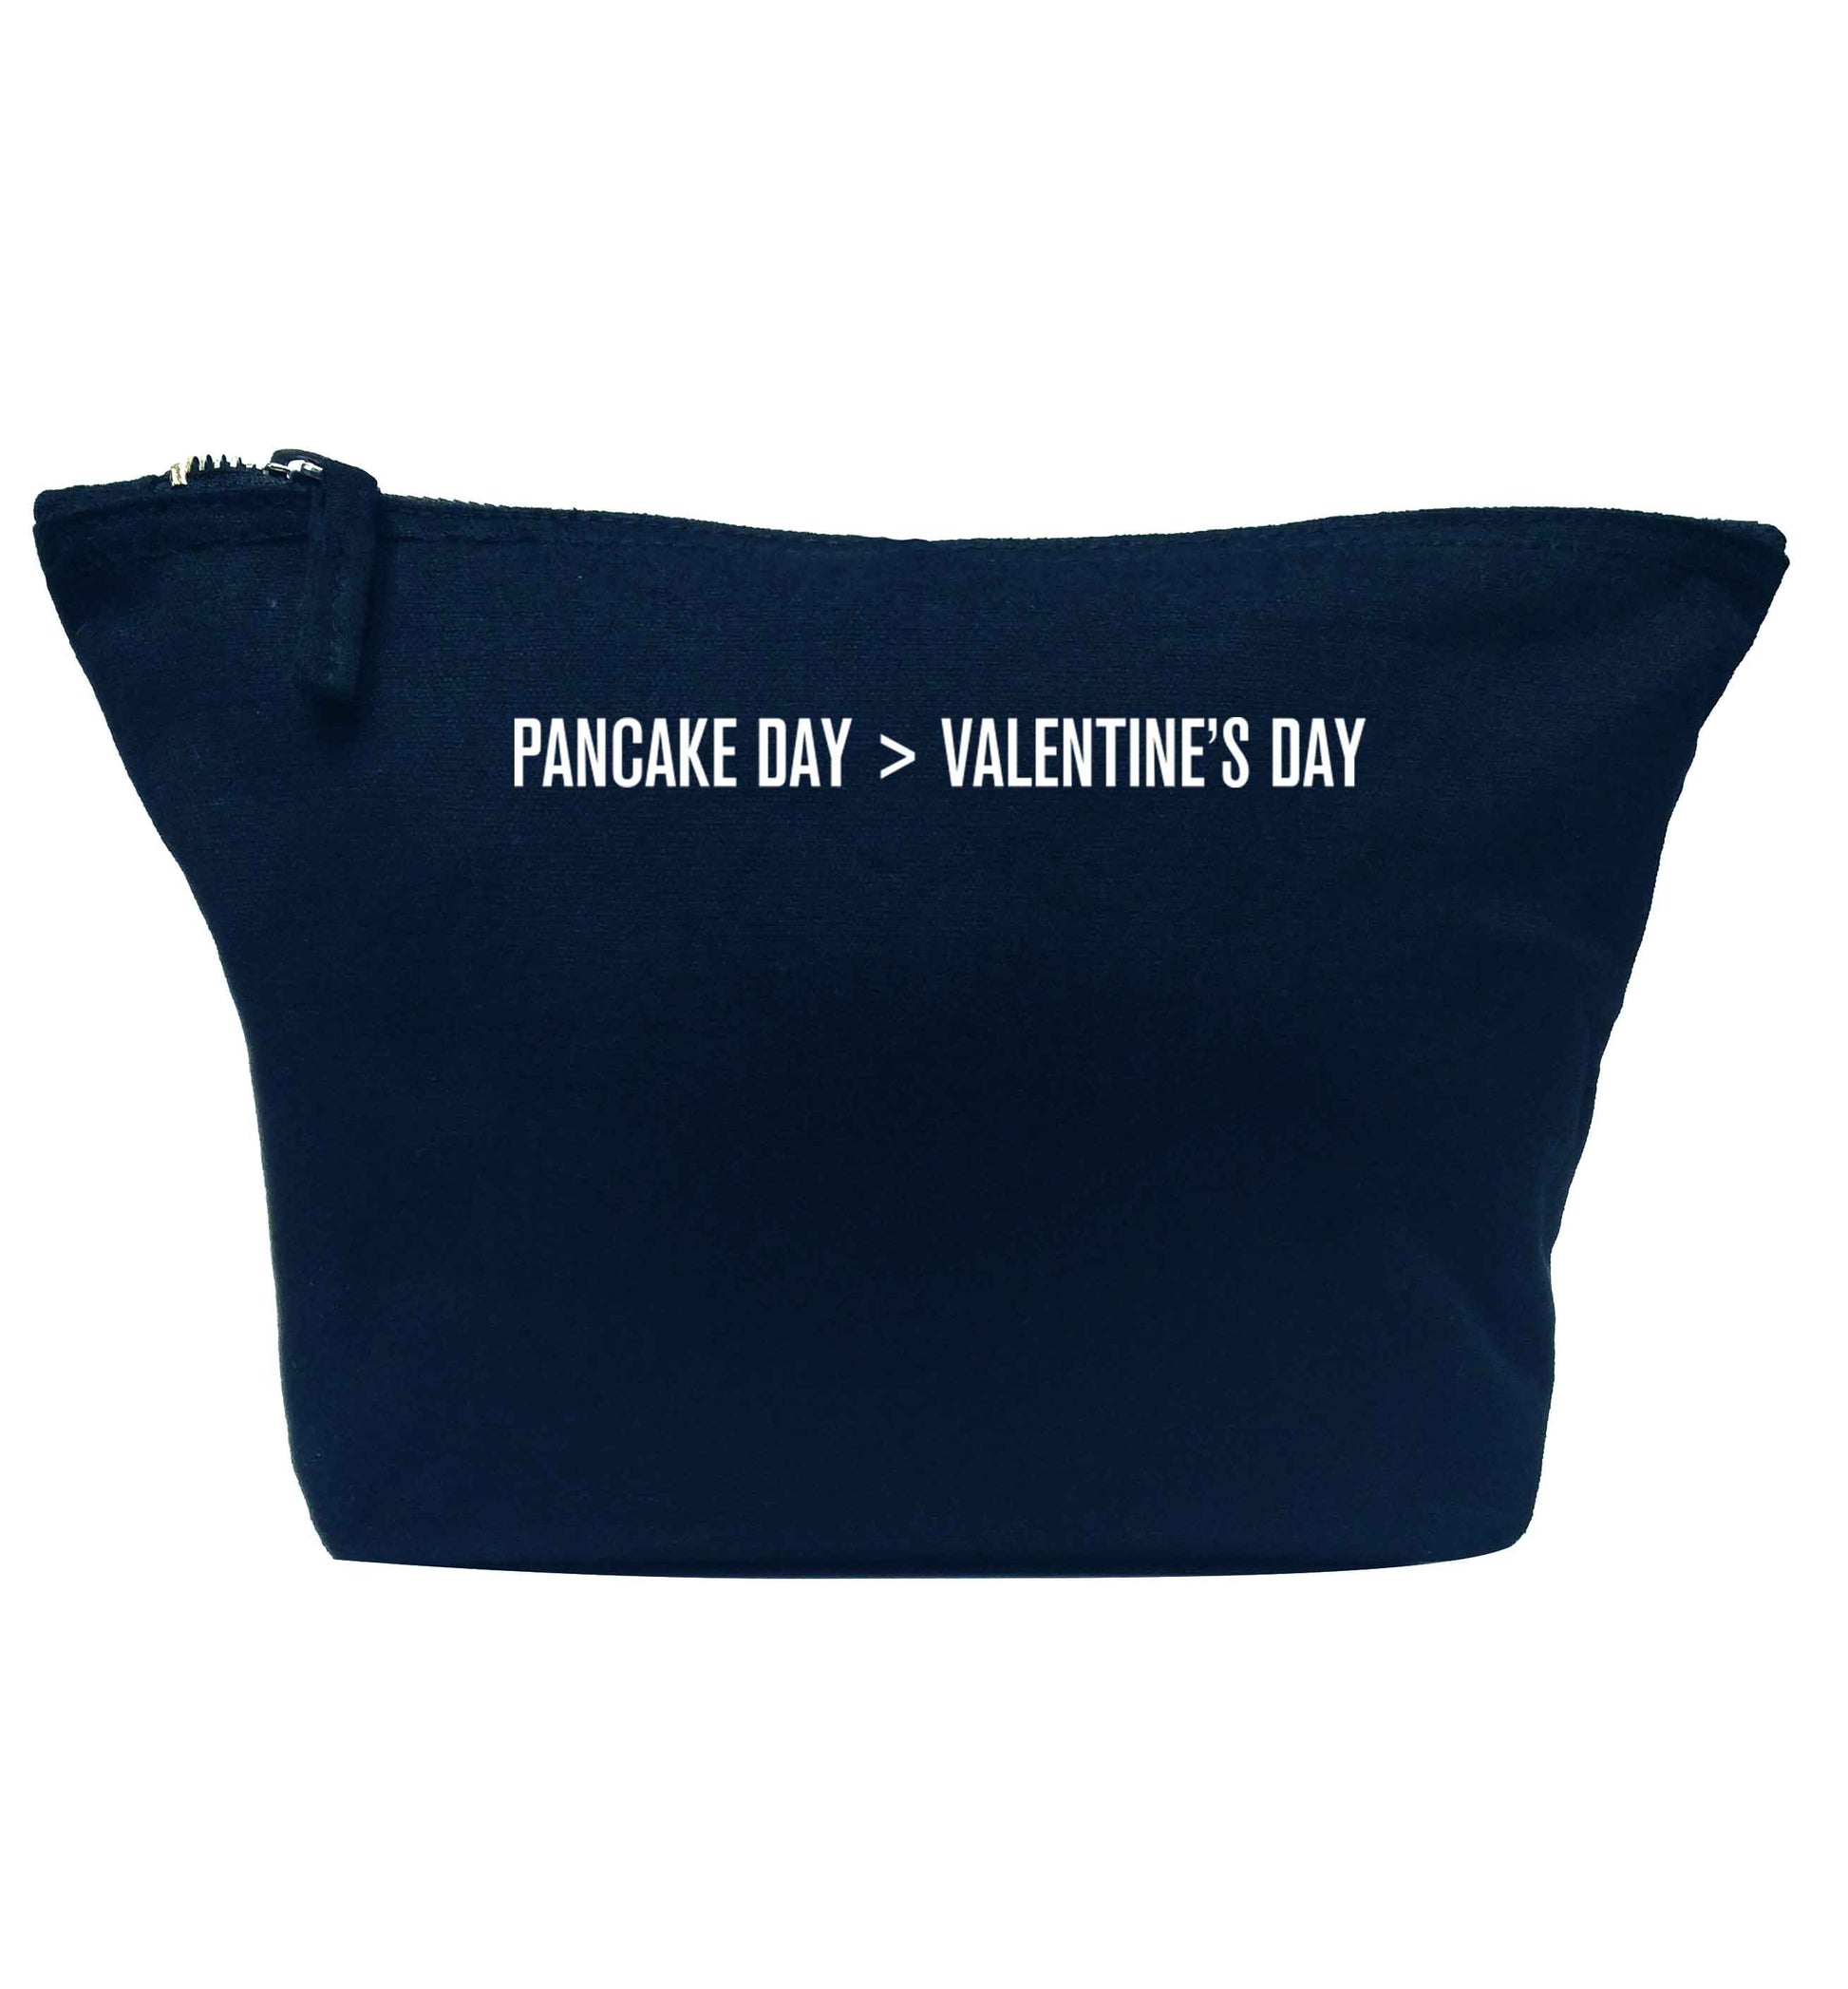 Pancake day > valentines day navy makeup bag